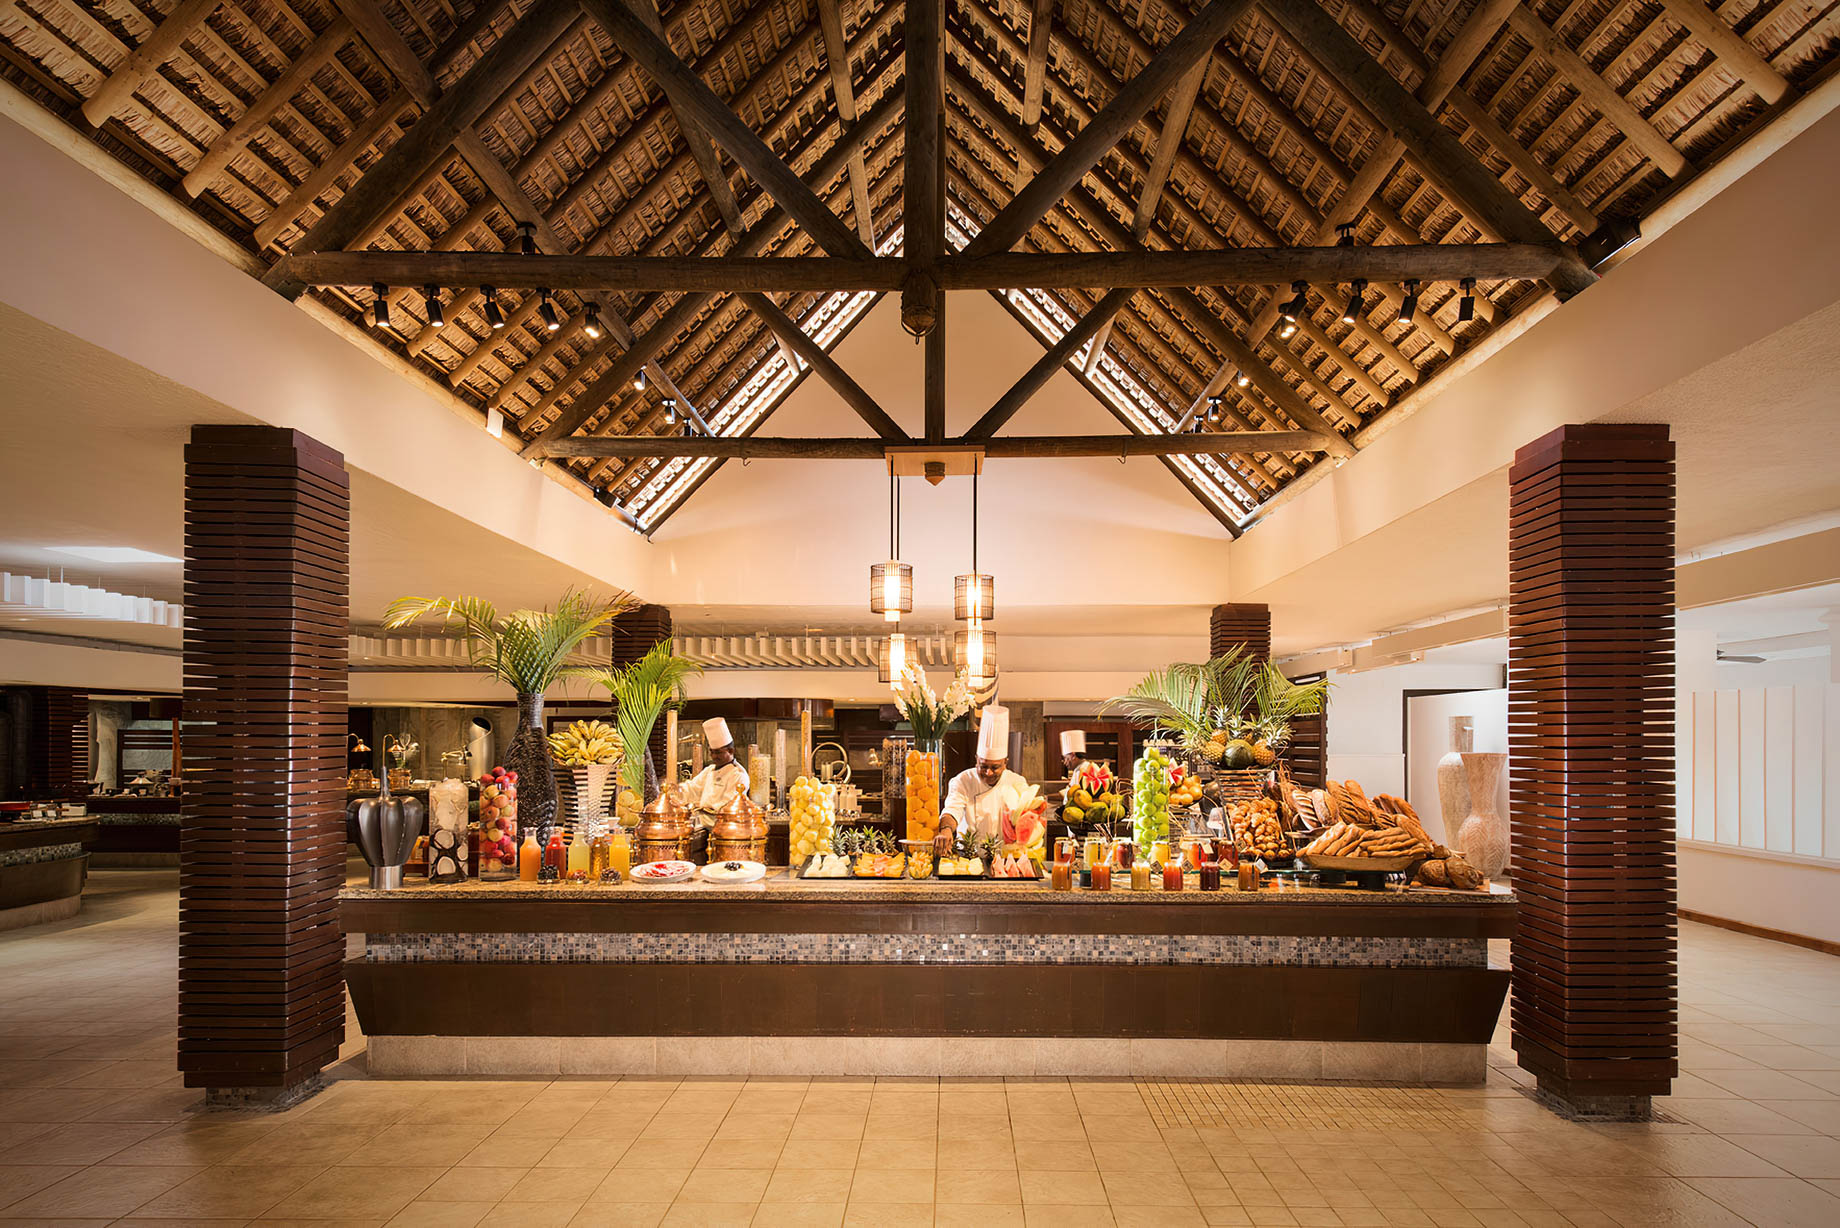 Constance Belle Mare Plage Resort - Mauritius - La Citronnelle Restaurant